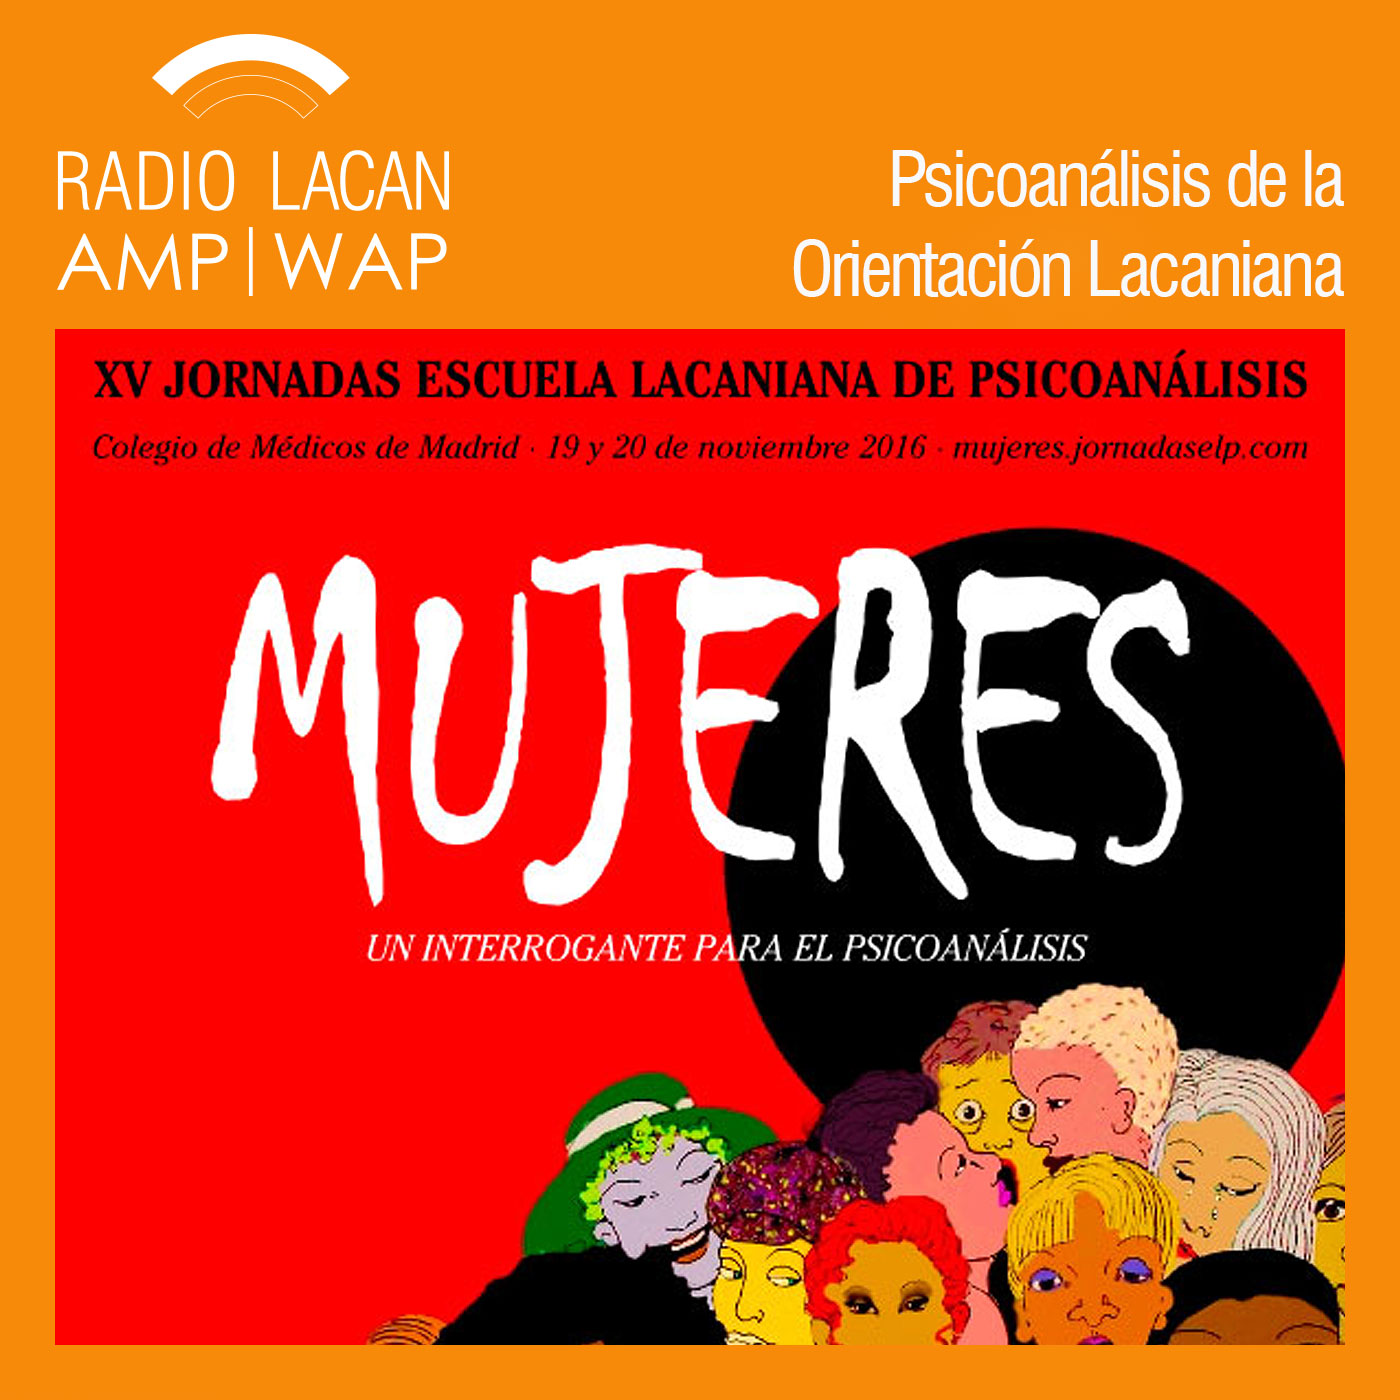 RadioLacan.com | Radio Lacan en las XVº Jornadas de la ELP: “Mujeres, un interrogante para el psicoa